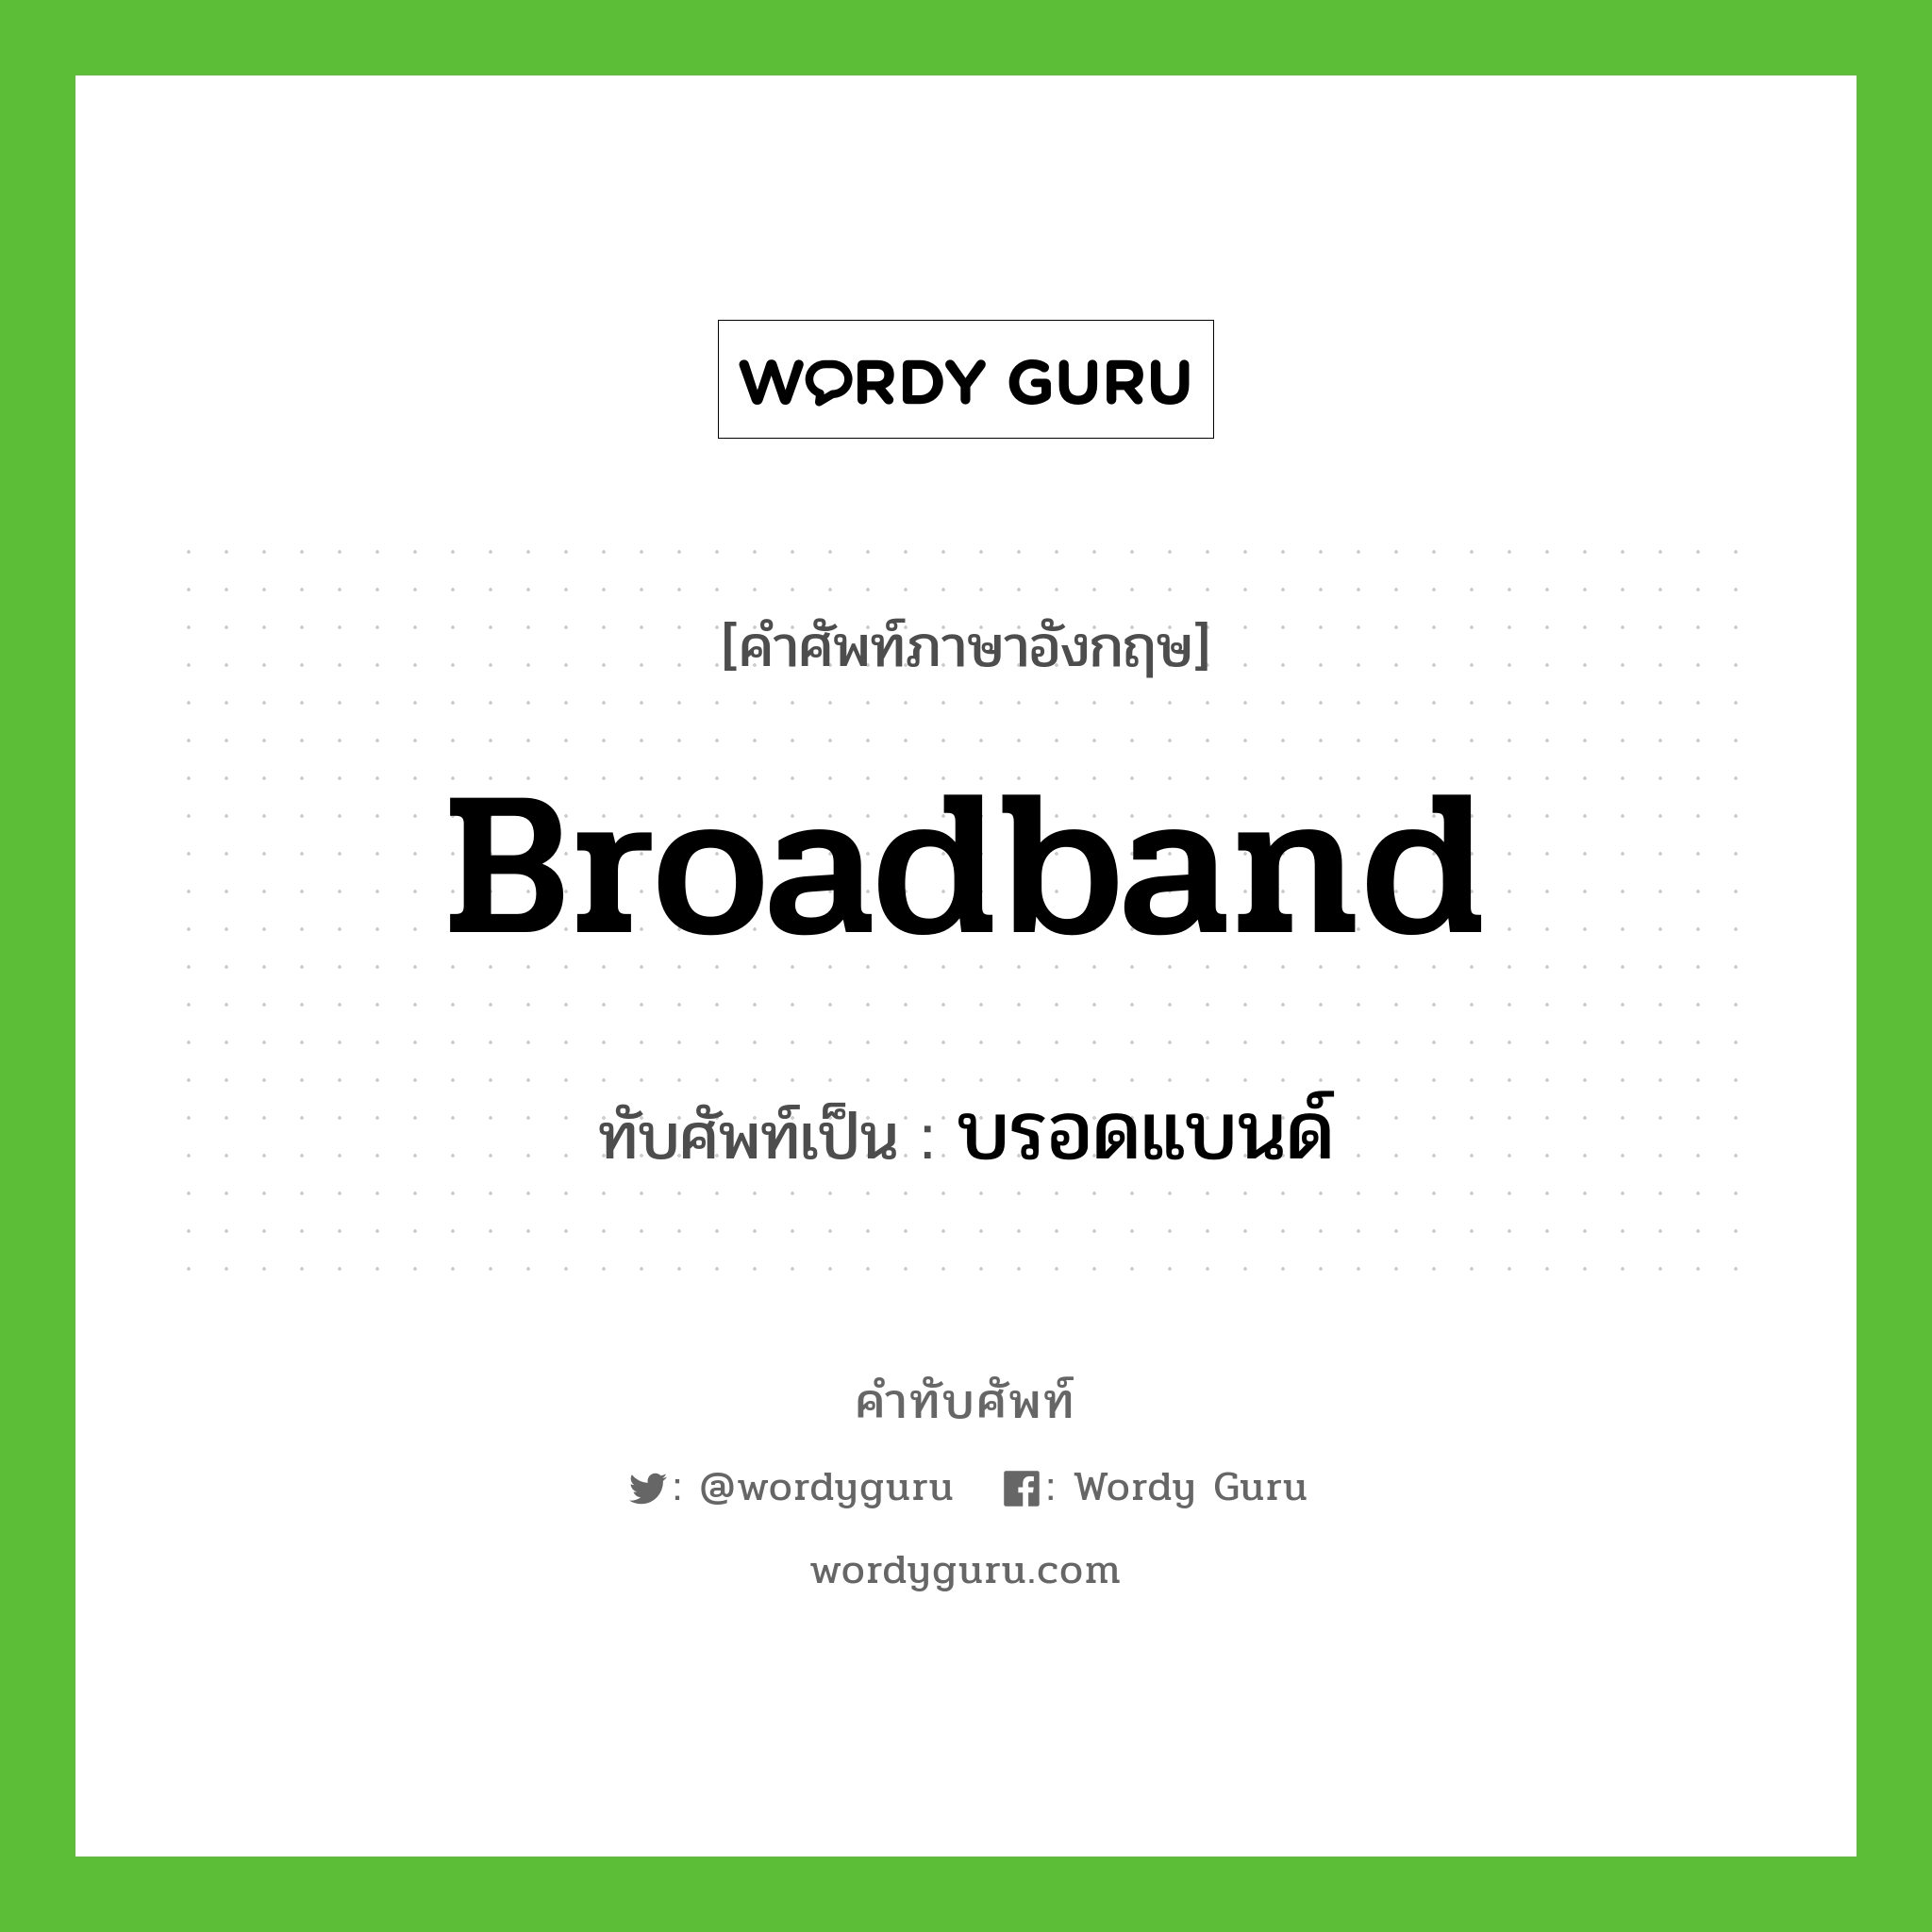 broadband เขียนเป็นคำไทยว่าอะไร?, คำศัพท์ภาษาอังกฤษ broadband ทับศัพท์เป็น บรอดแบนด์